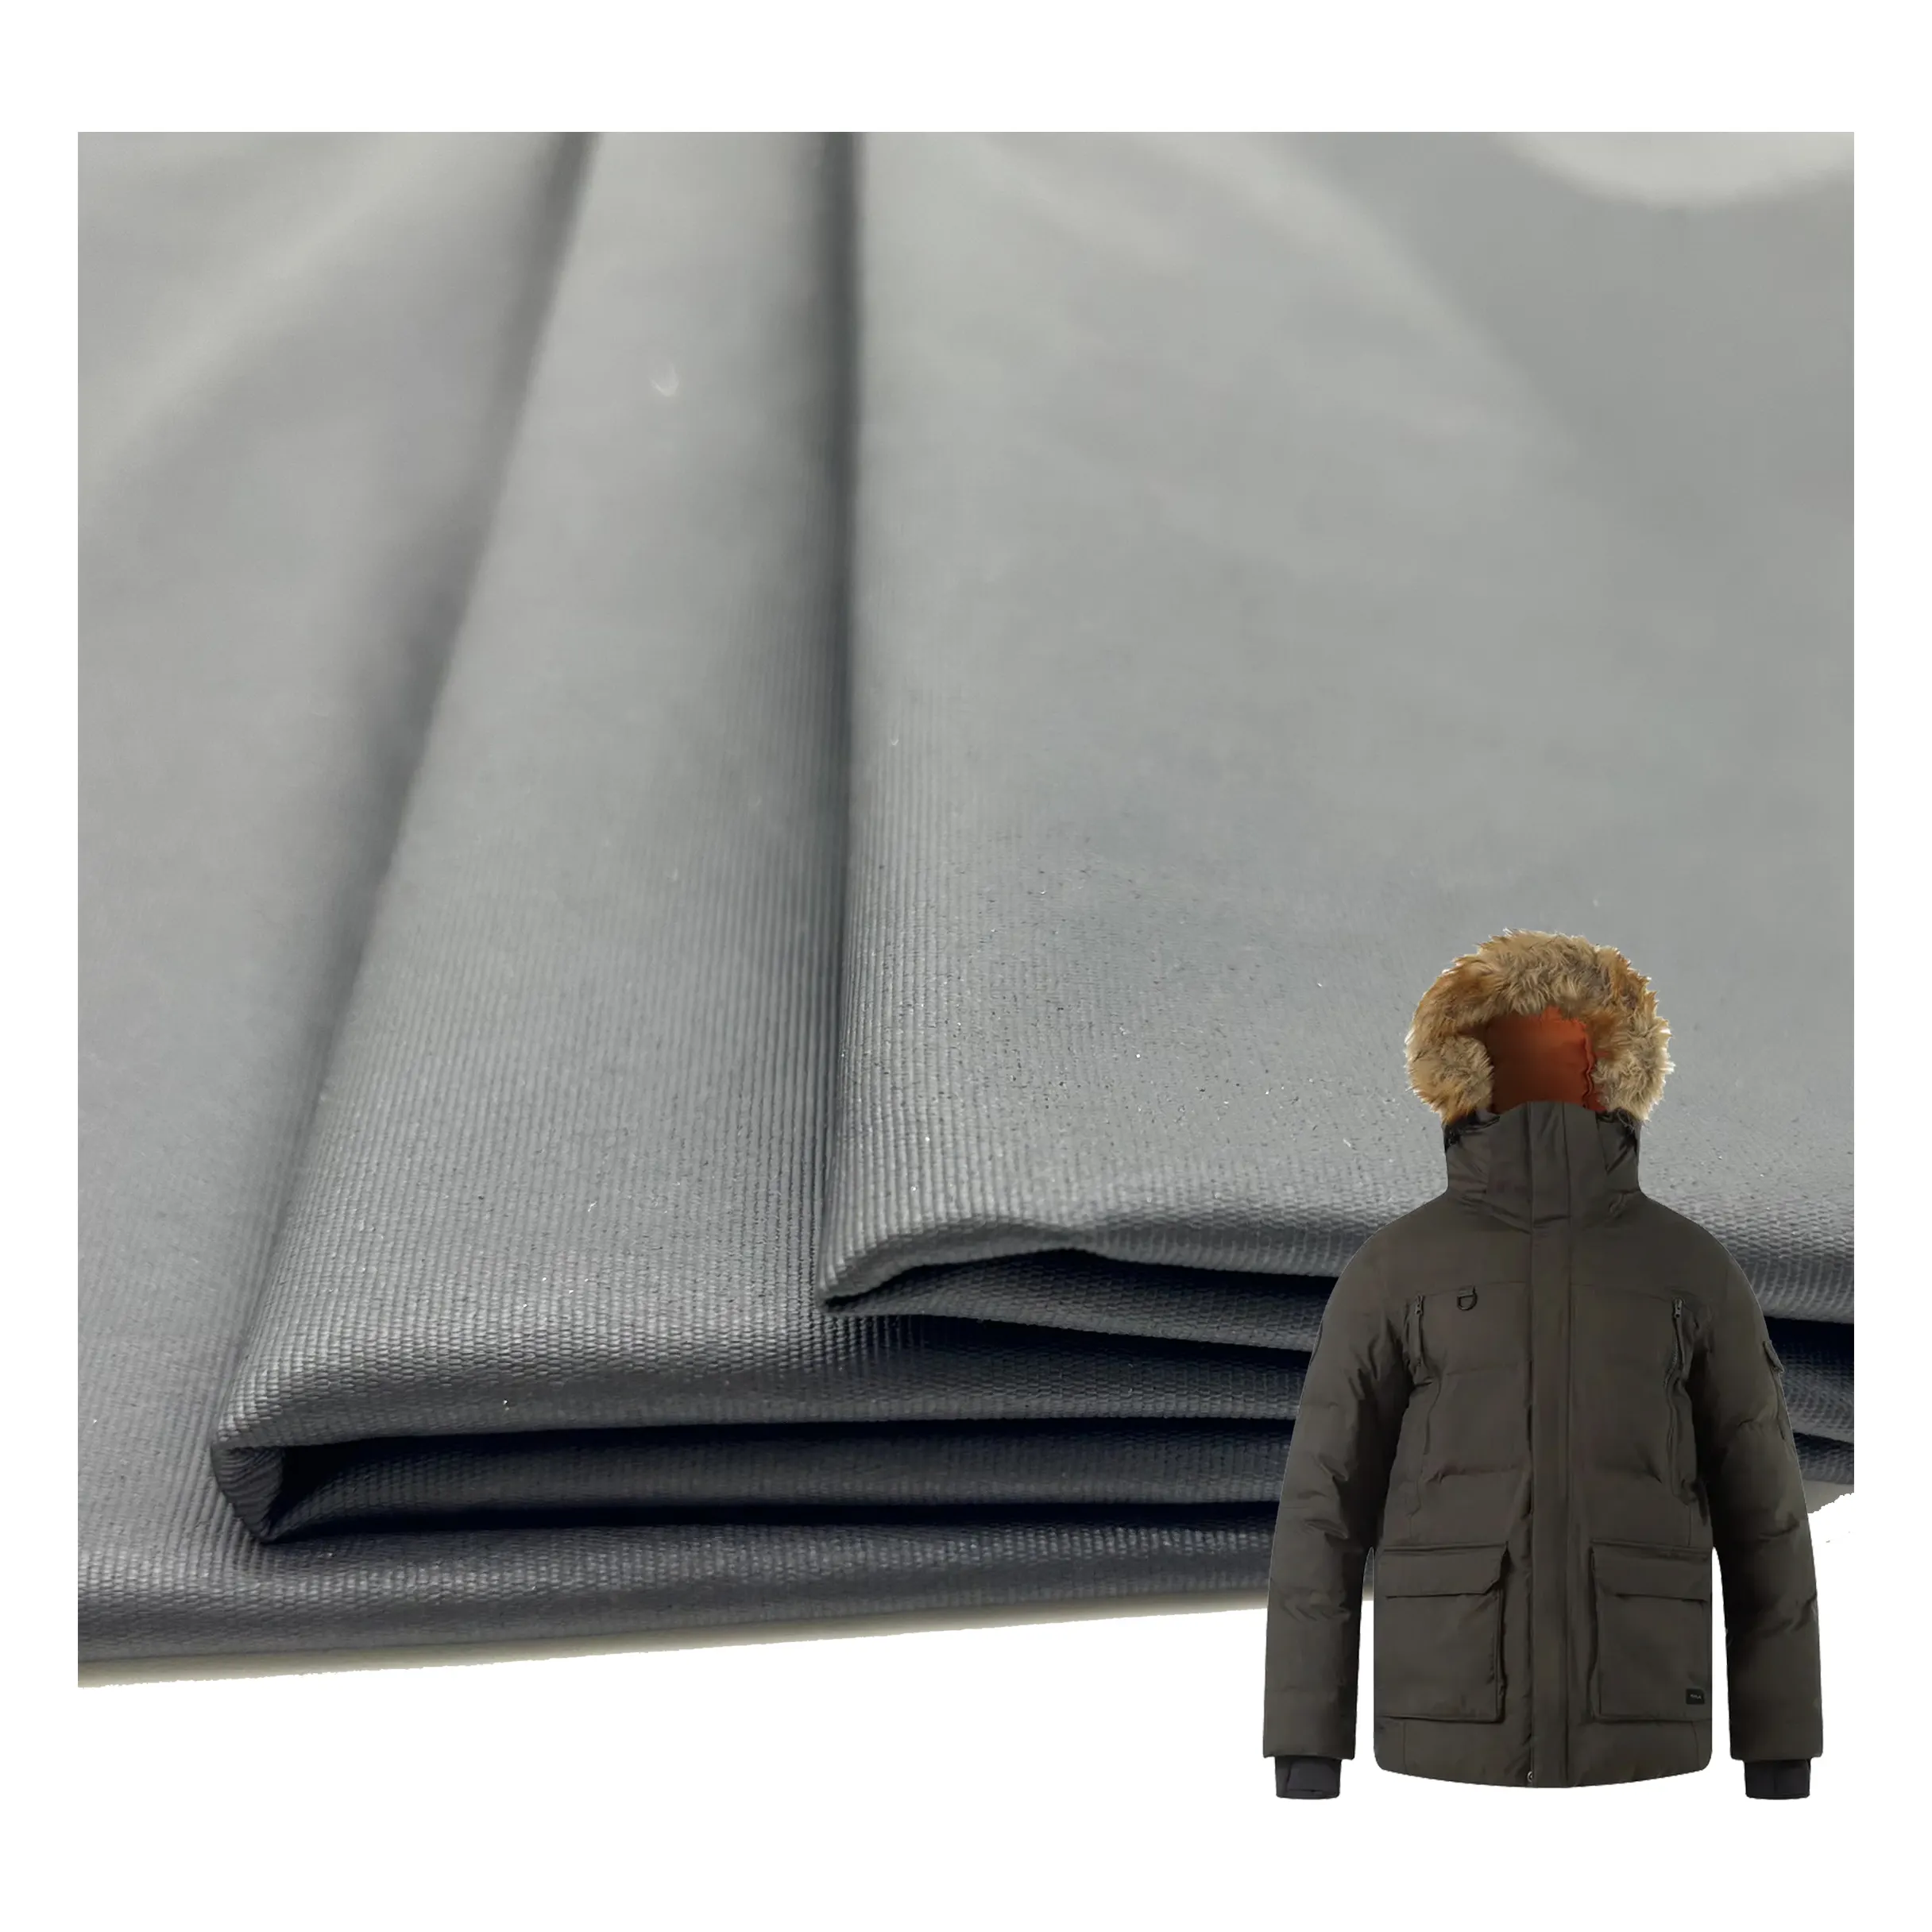 Precio de fábrica impermeable a prueba de viento 320T nylon PU recubierto transpirable completo opaco nylon Taslon tela para chaqueta al aire libre